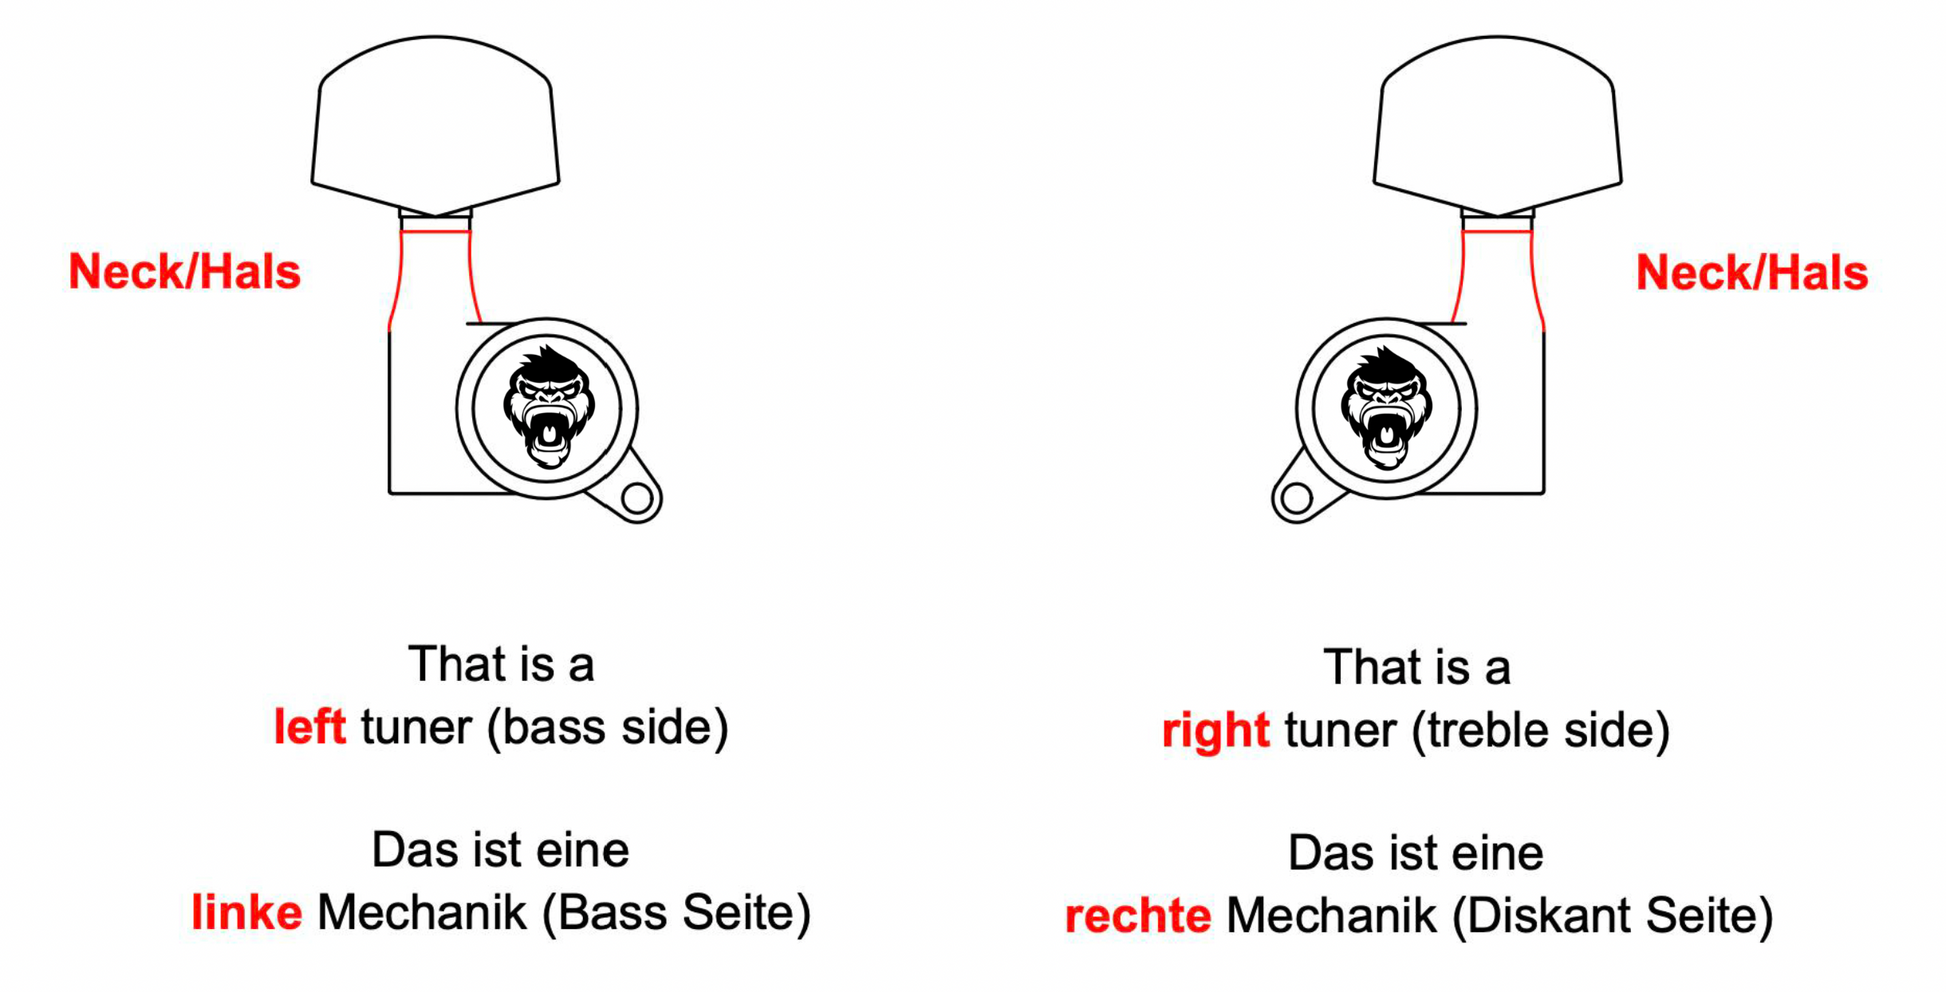 6-String Set - Monkey Locks - Locking Tuners - Gitarren Klemm Mechaniken - Big German Tamarindenholz Buttons - Guitar Monkey